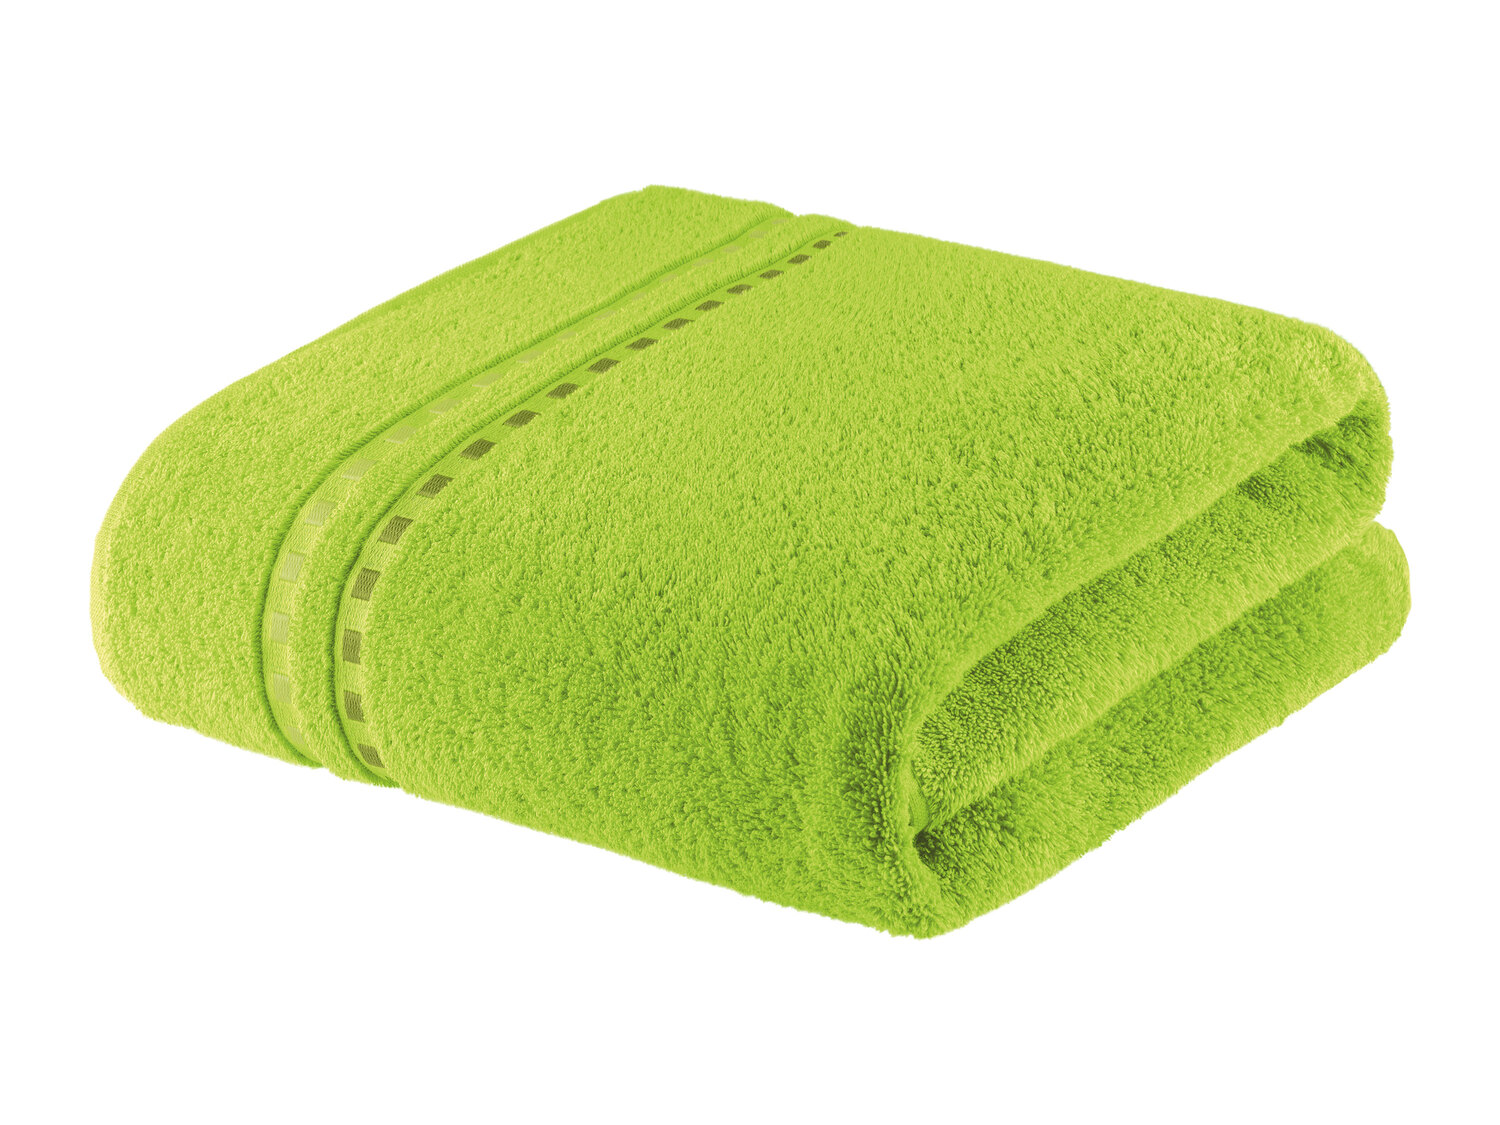 Ręcznik 100 x 150 cm , cena 34,99 PLN 
- 450 g/m2
- 100% bawełny
- miękki i puszysty
- ...